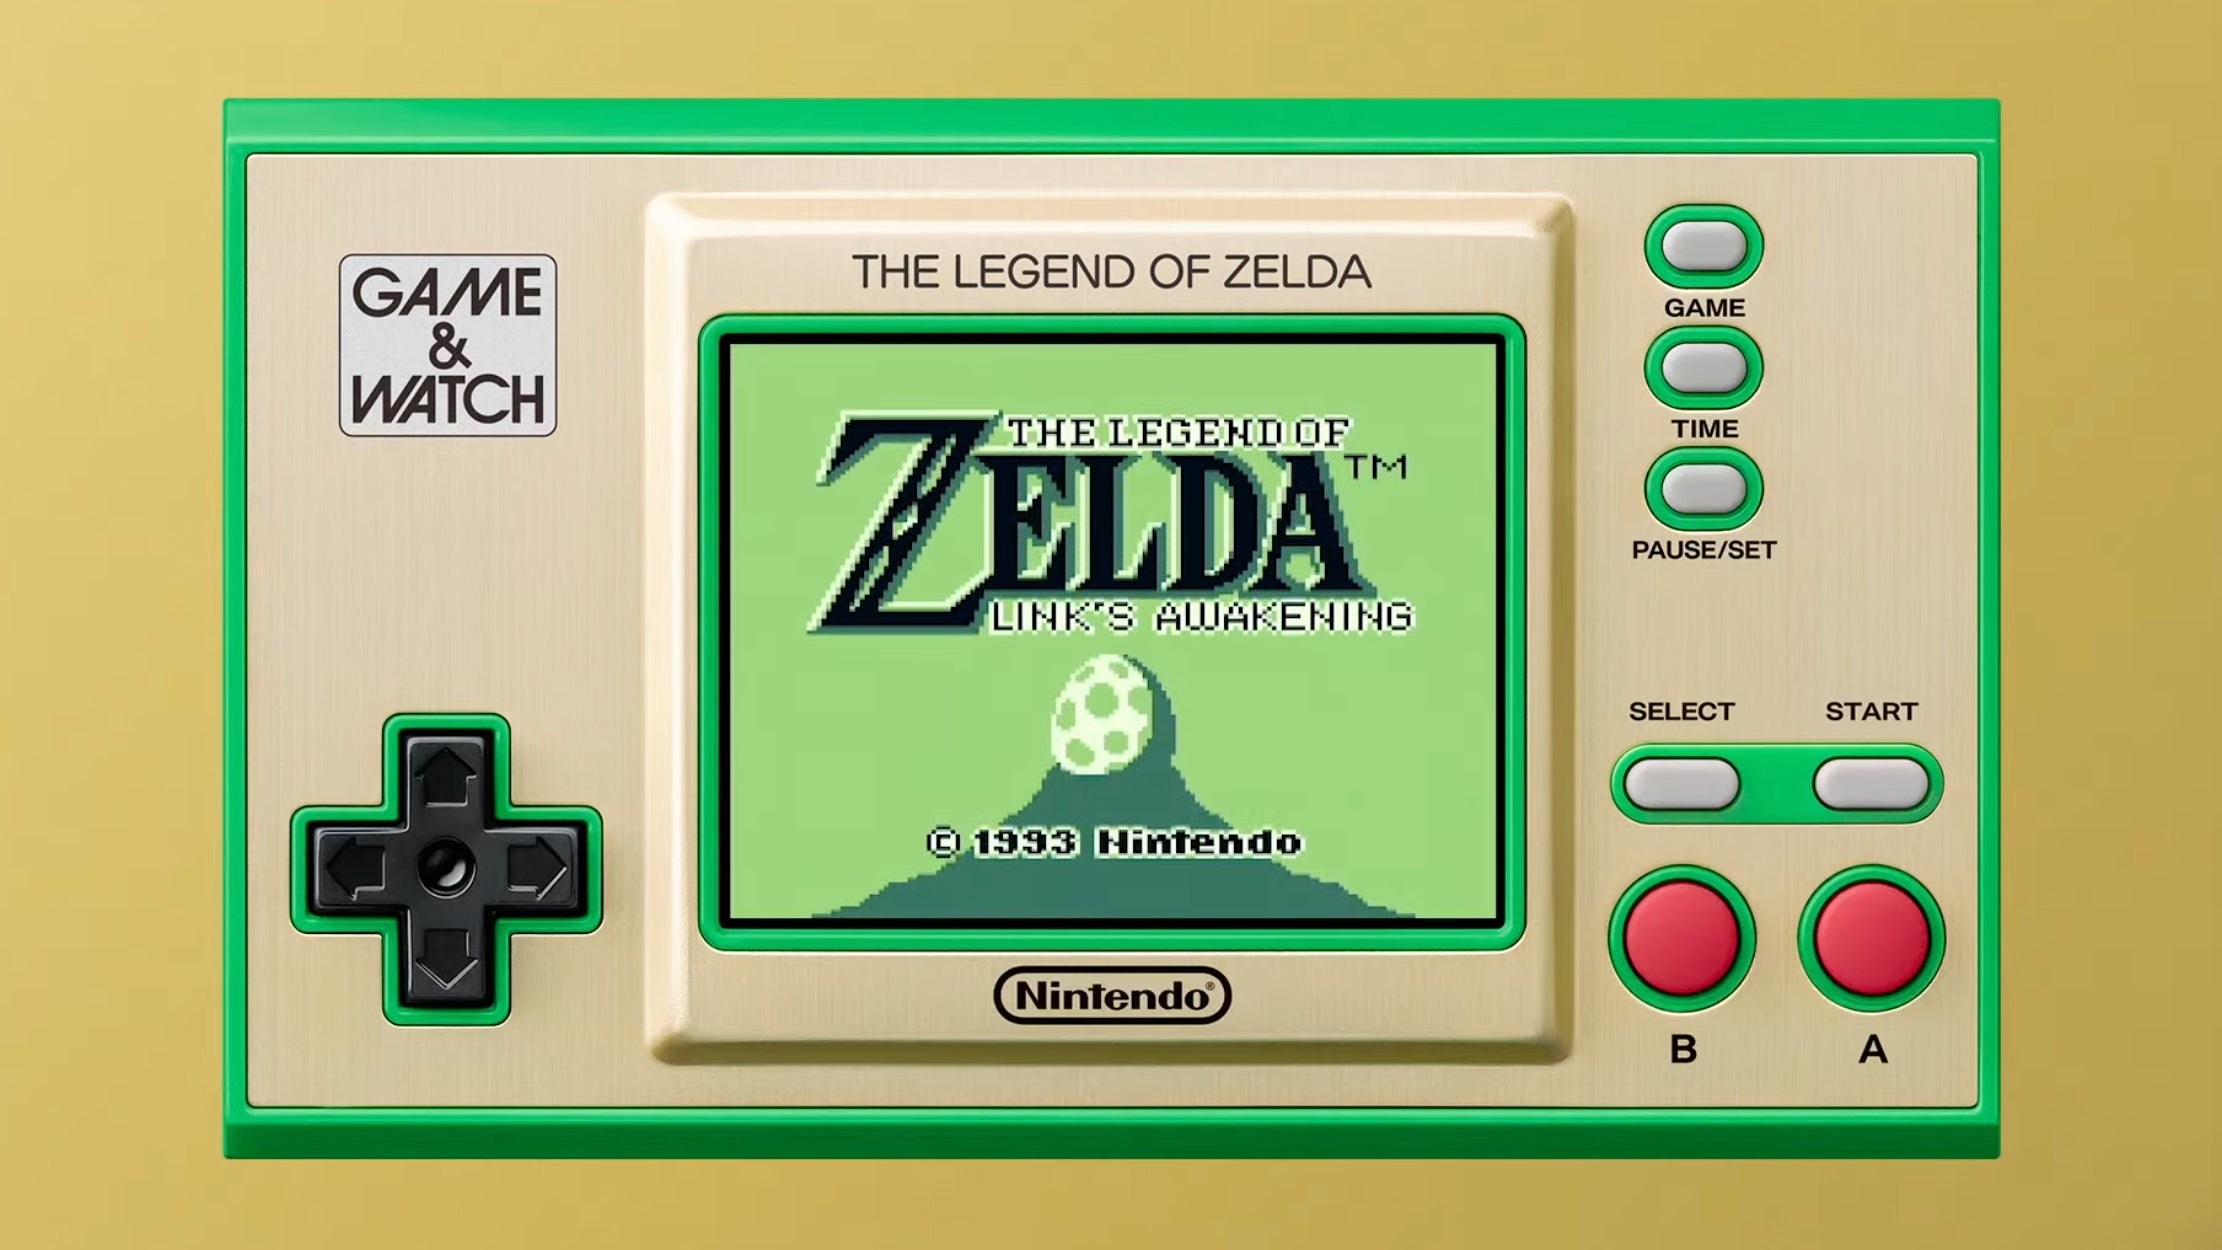 The Legend of Zelda: Link's Awakening Review - Galaxy of Geek